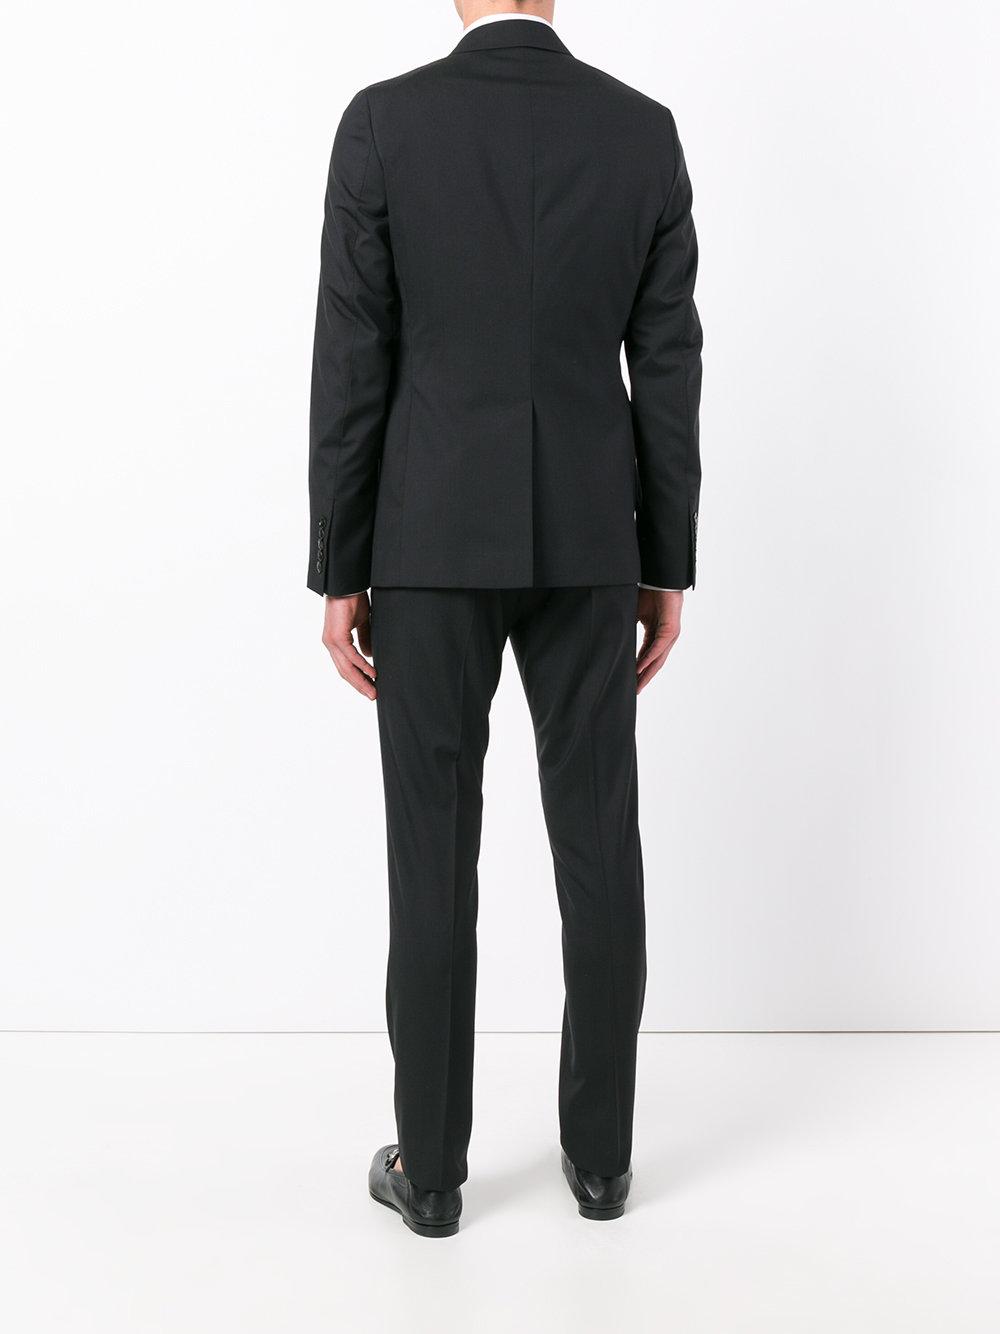 Gucci Wool Monaco Suit in Black for Men - Lyst